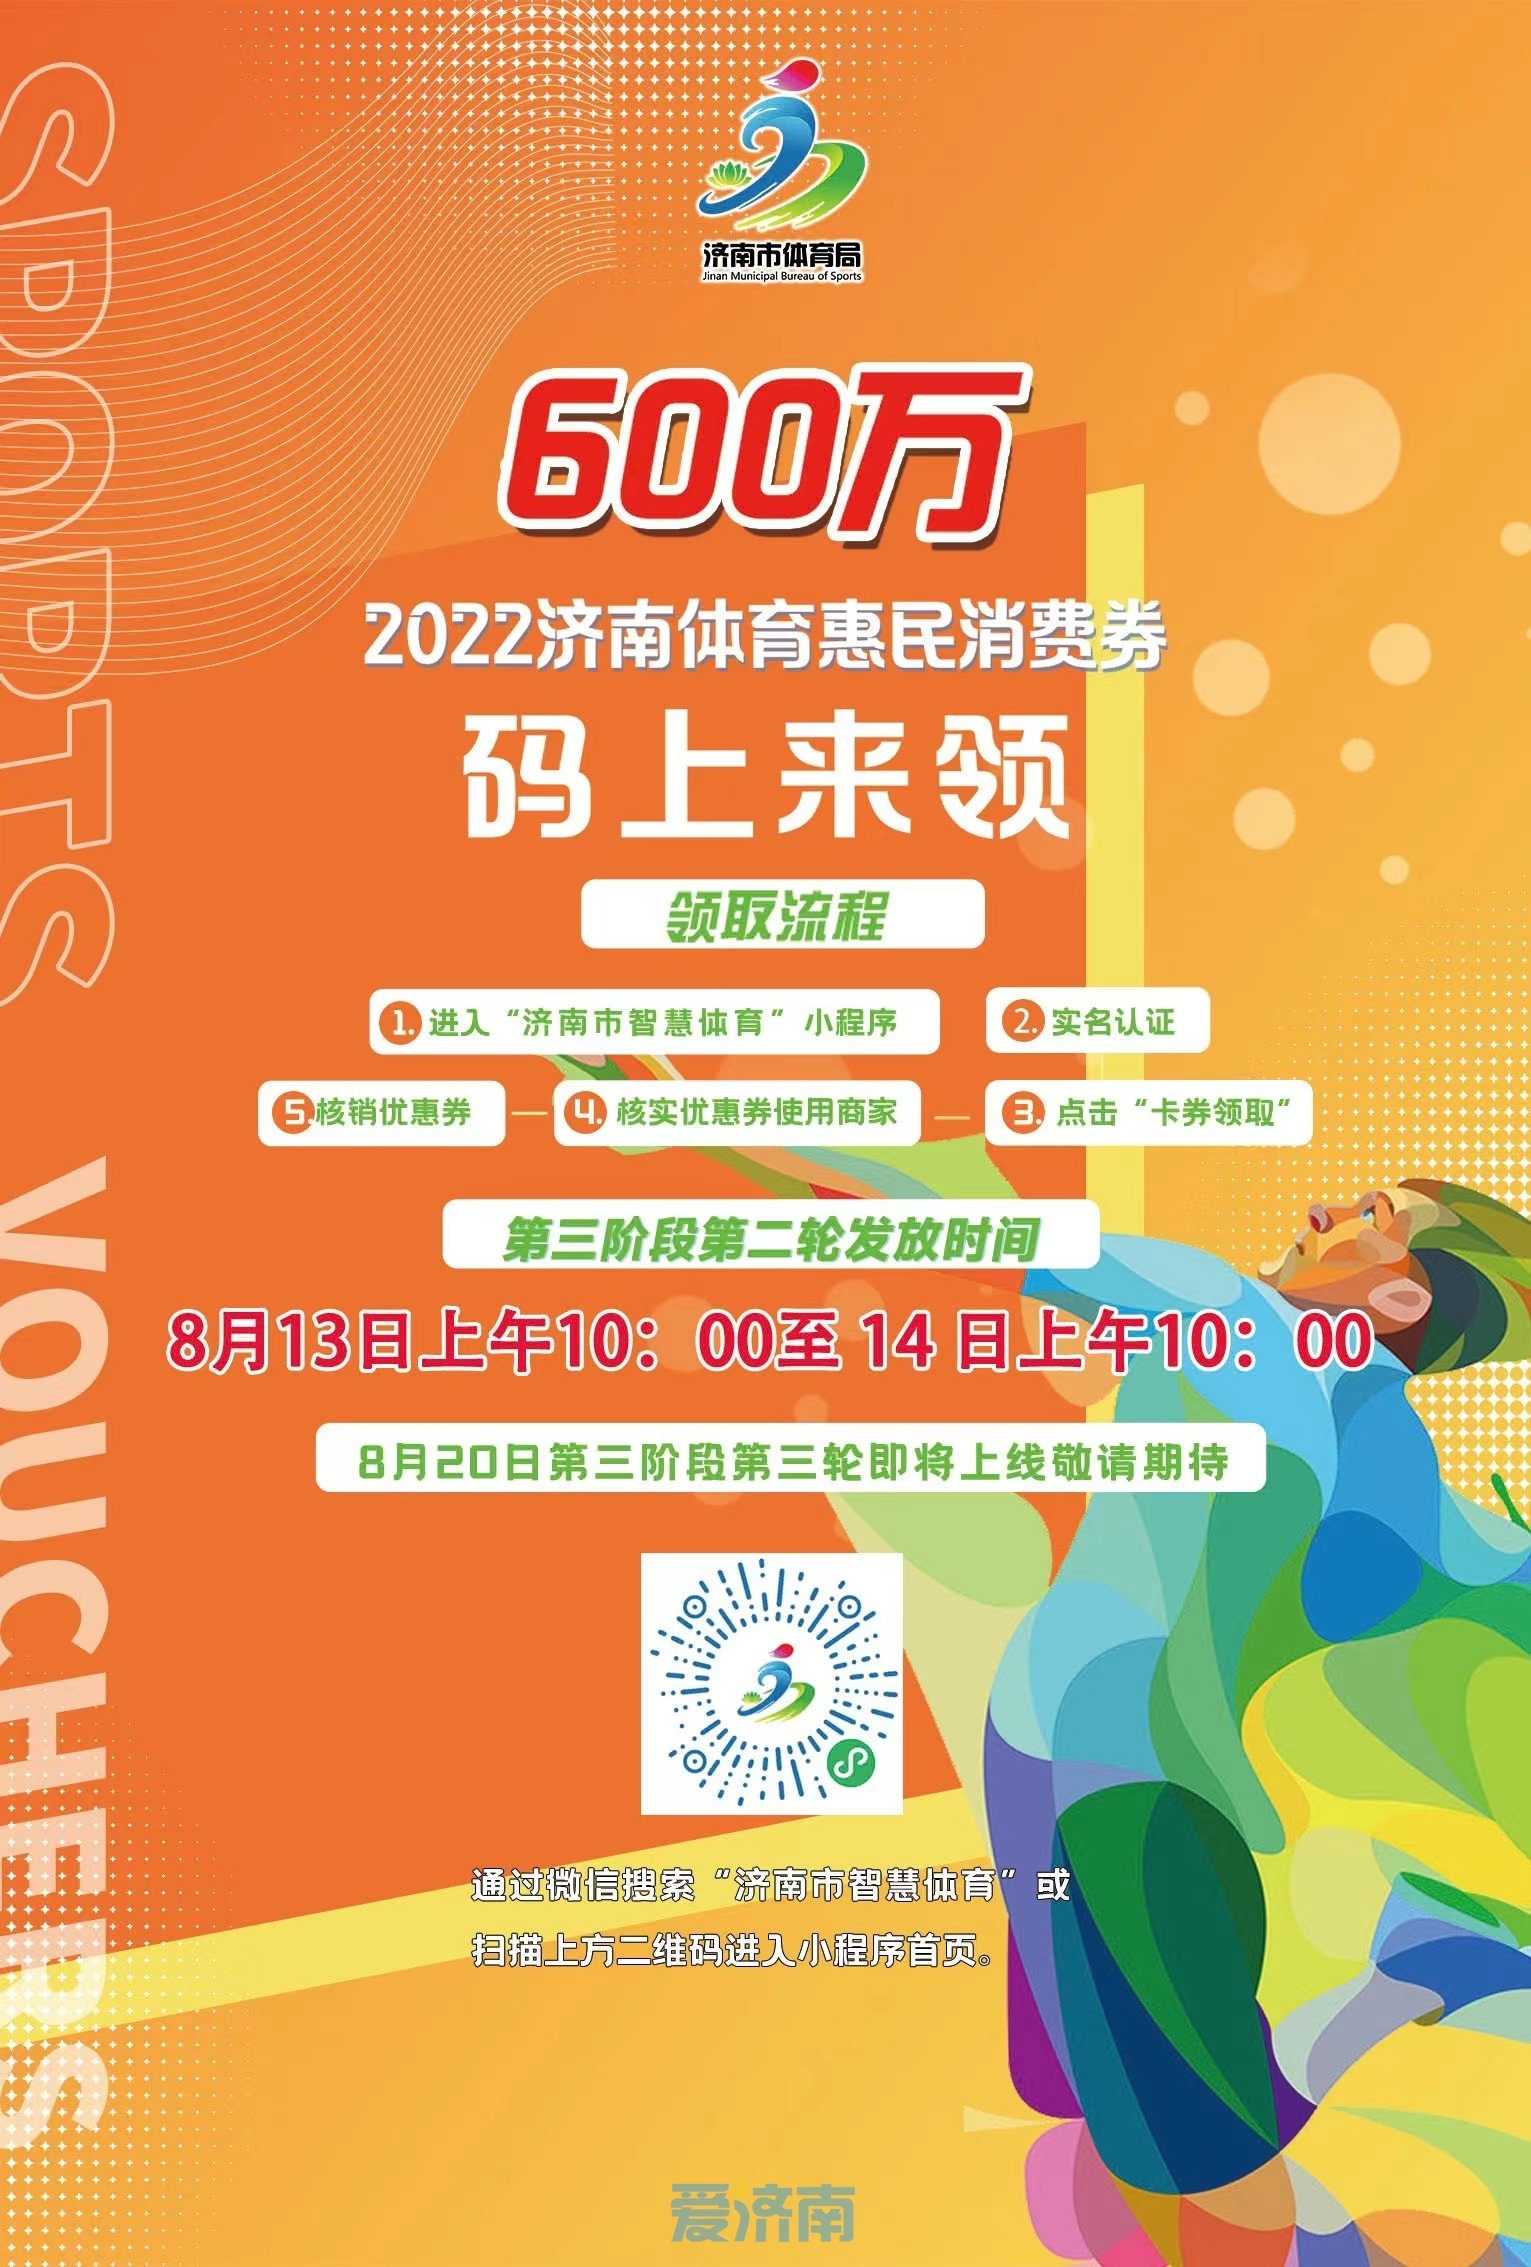 济南市第三阶段第二轮体育惠民消费券8月13日上午10点派发 